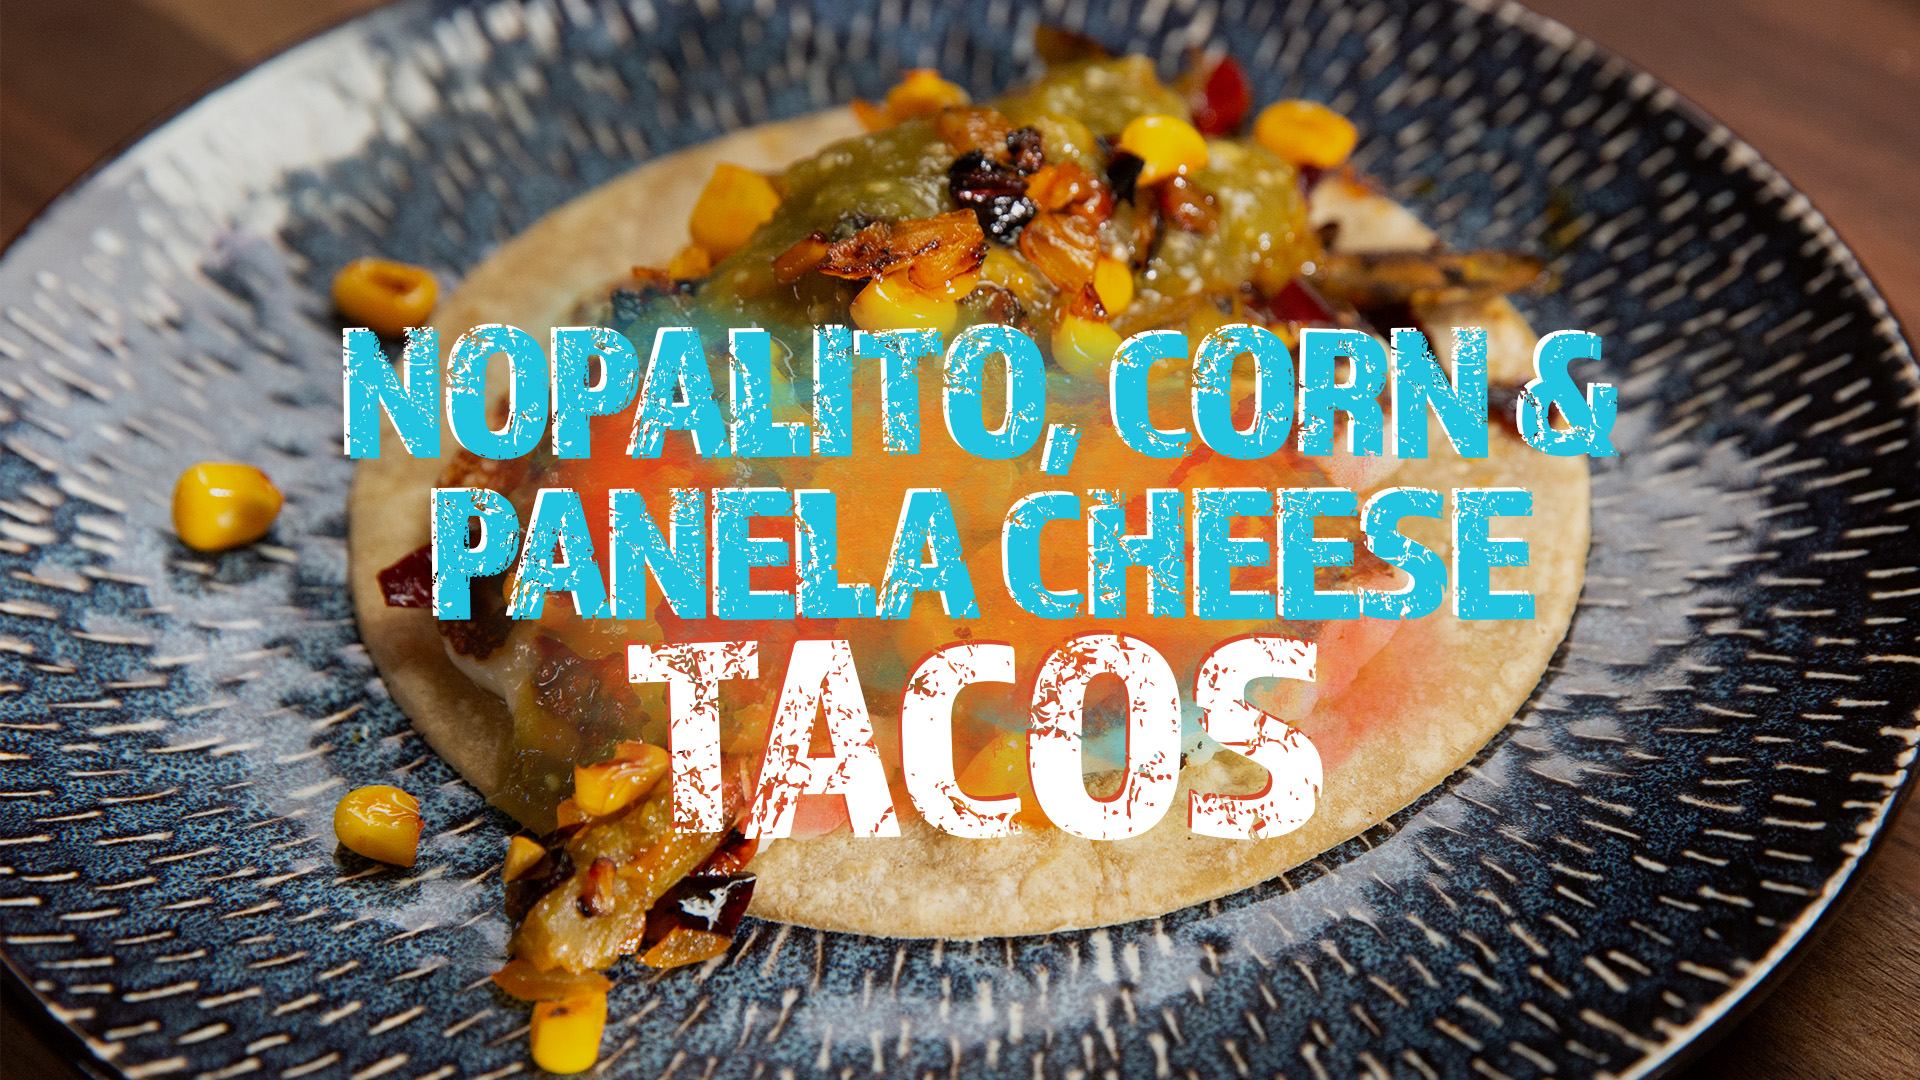 Pump Up El Sabor: Nopalito, Corn & Panela Cheese Tacos video